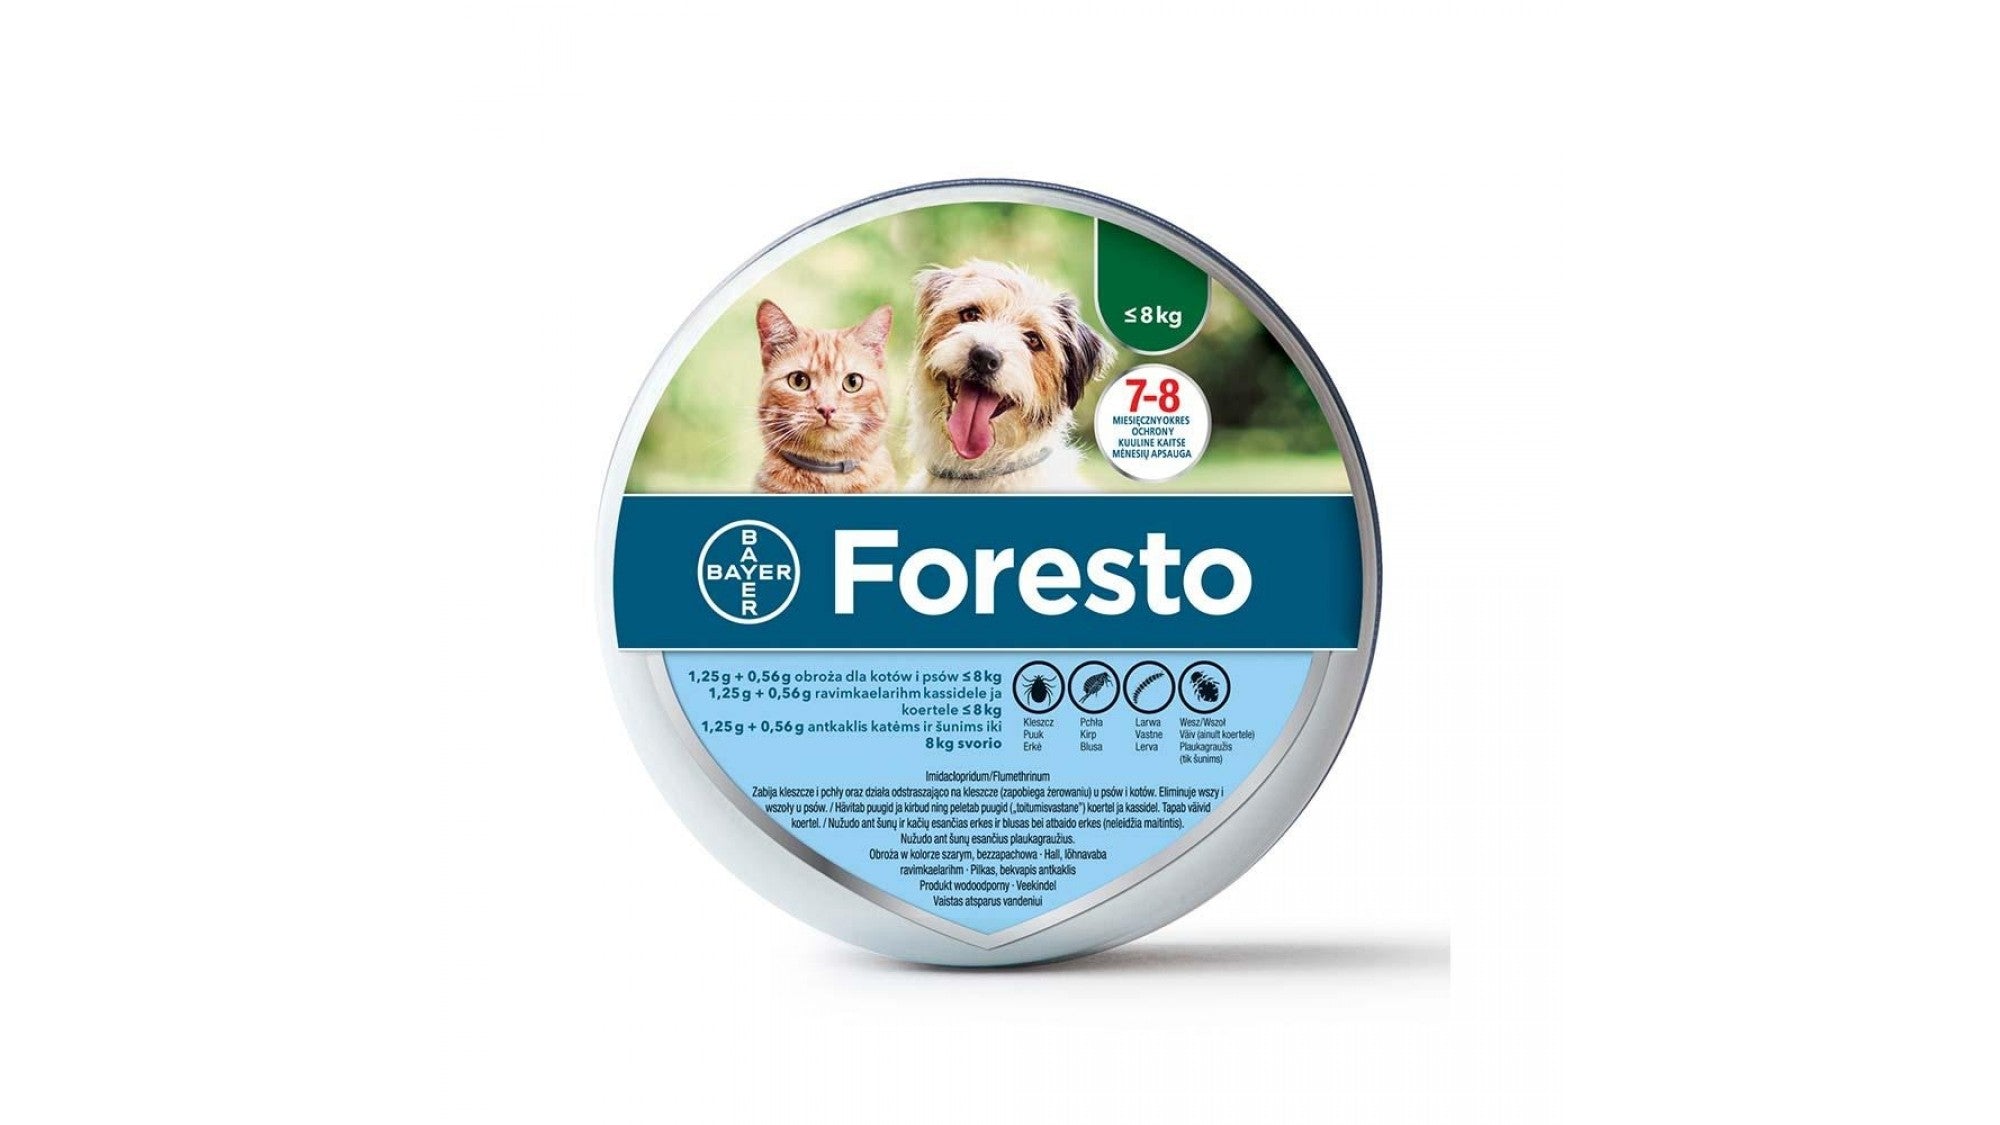 Foresto Zgarda Antiparazitara S (<8 kg) - ALTVET - Farmacie veterinara - Pet Shop - Cosmetica